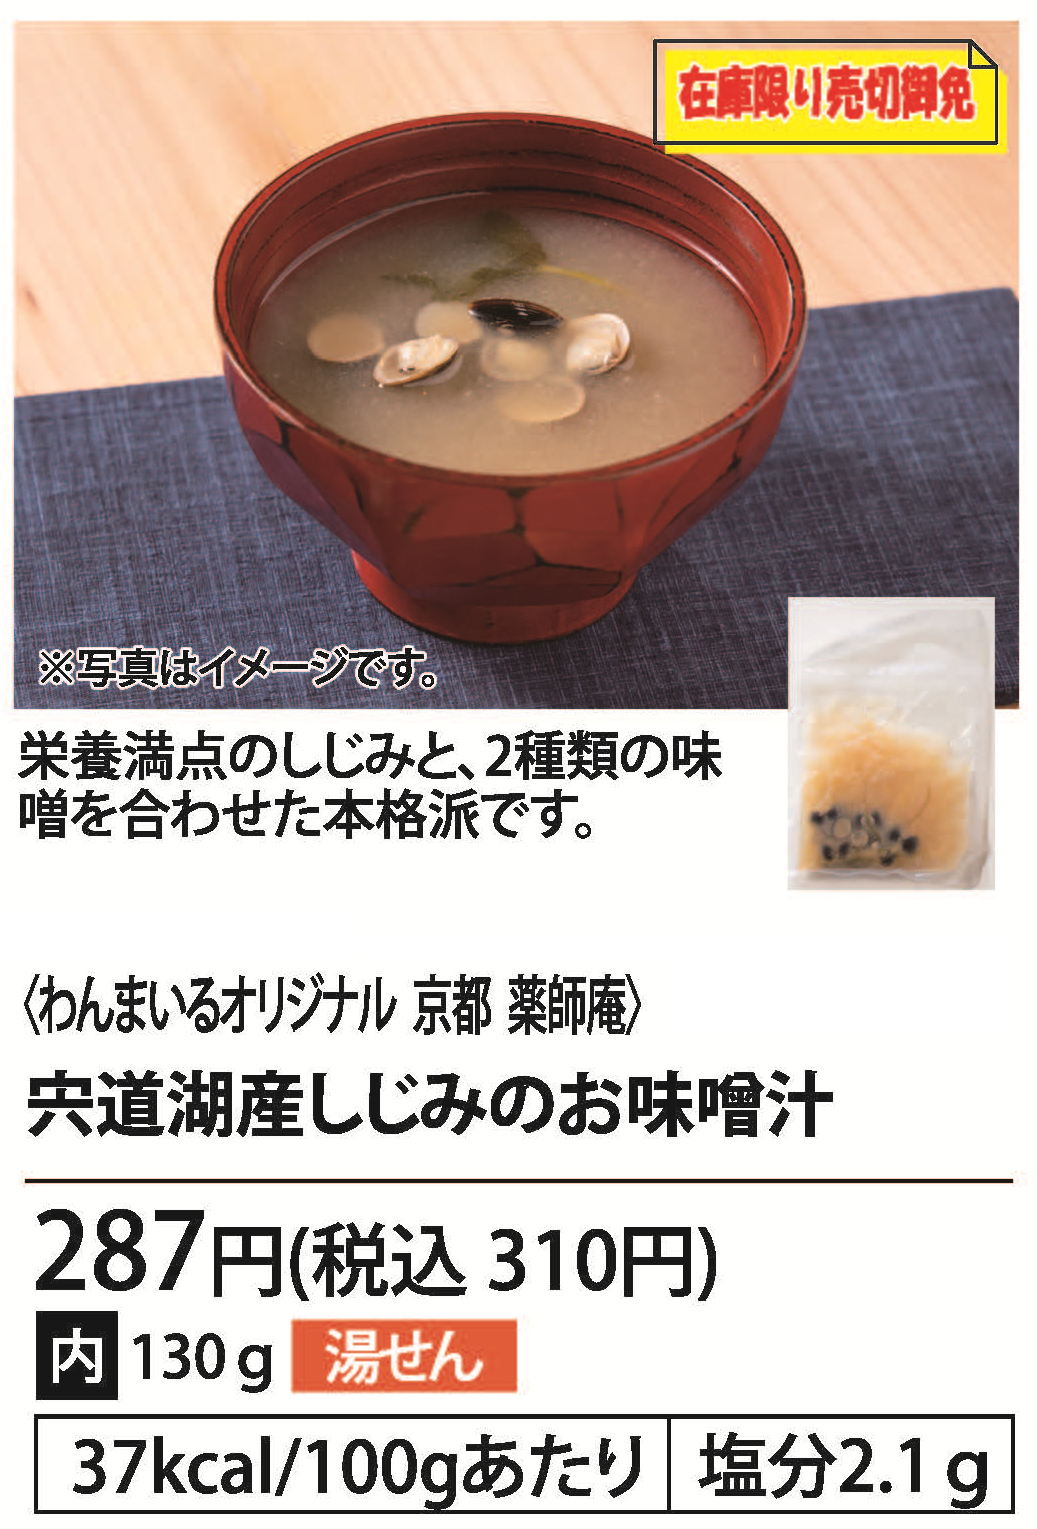 宍道湖産しじみのお味噌汁